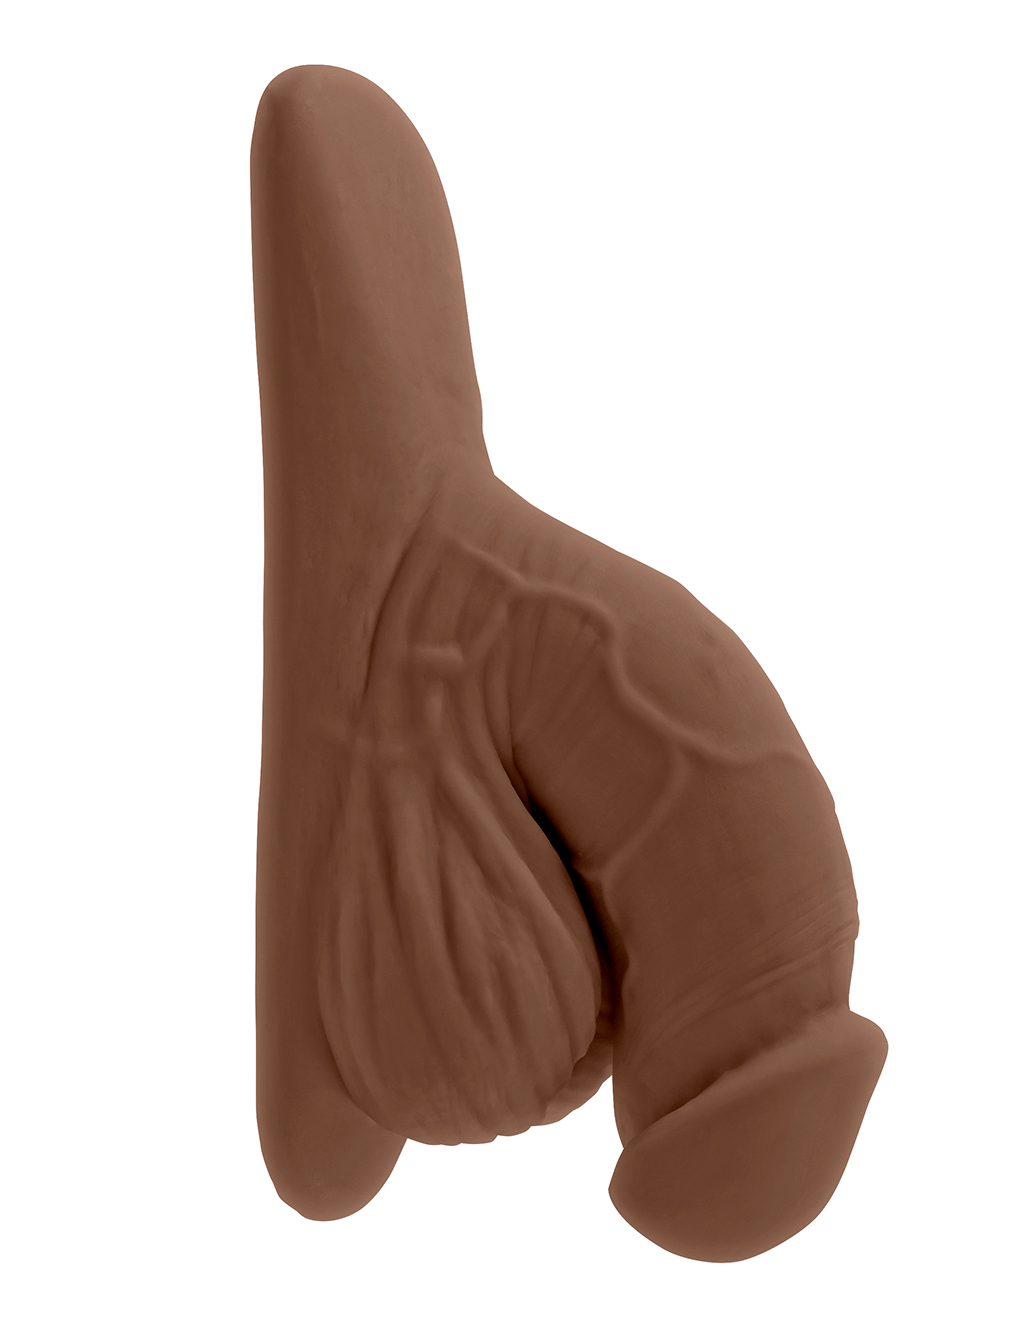 Gender X 4" Packer - Chocolate - Main